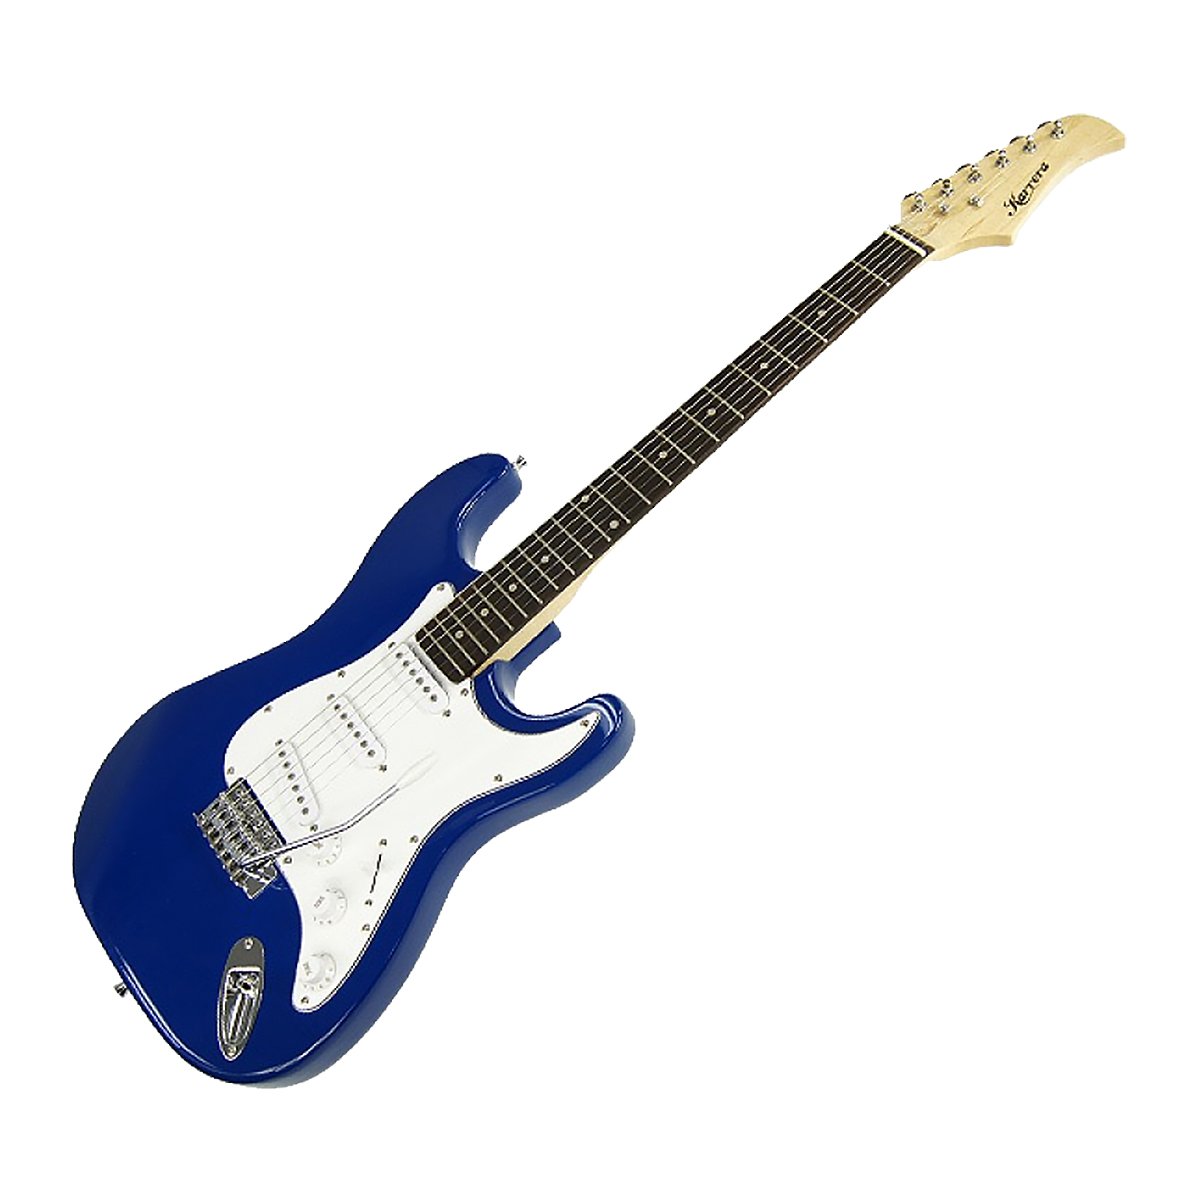 Karrera 39in Electric Guitar - Blue 2